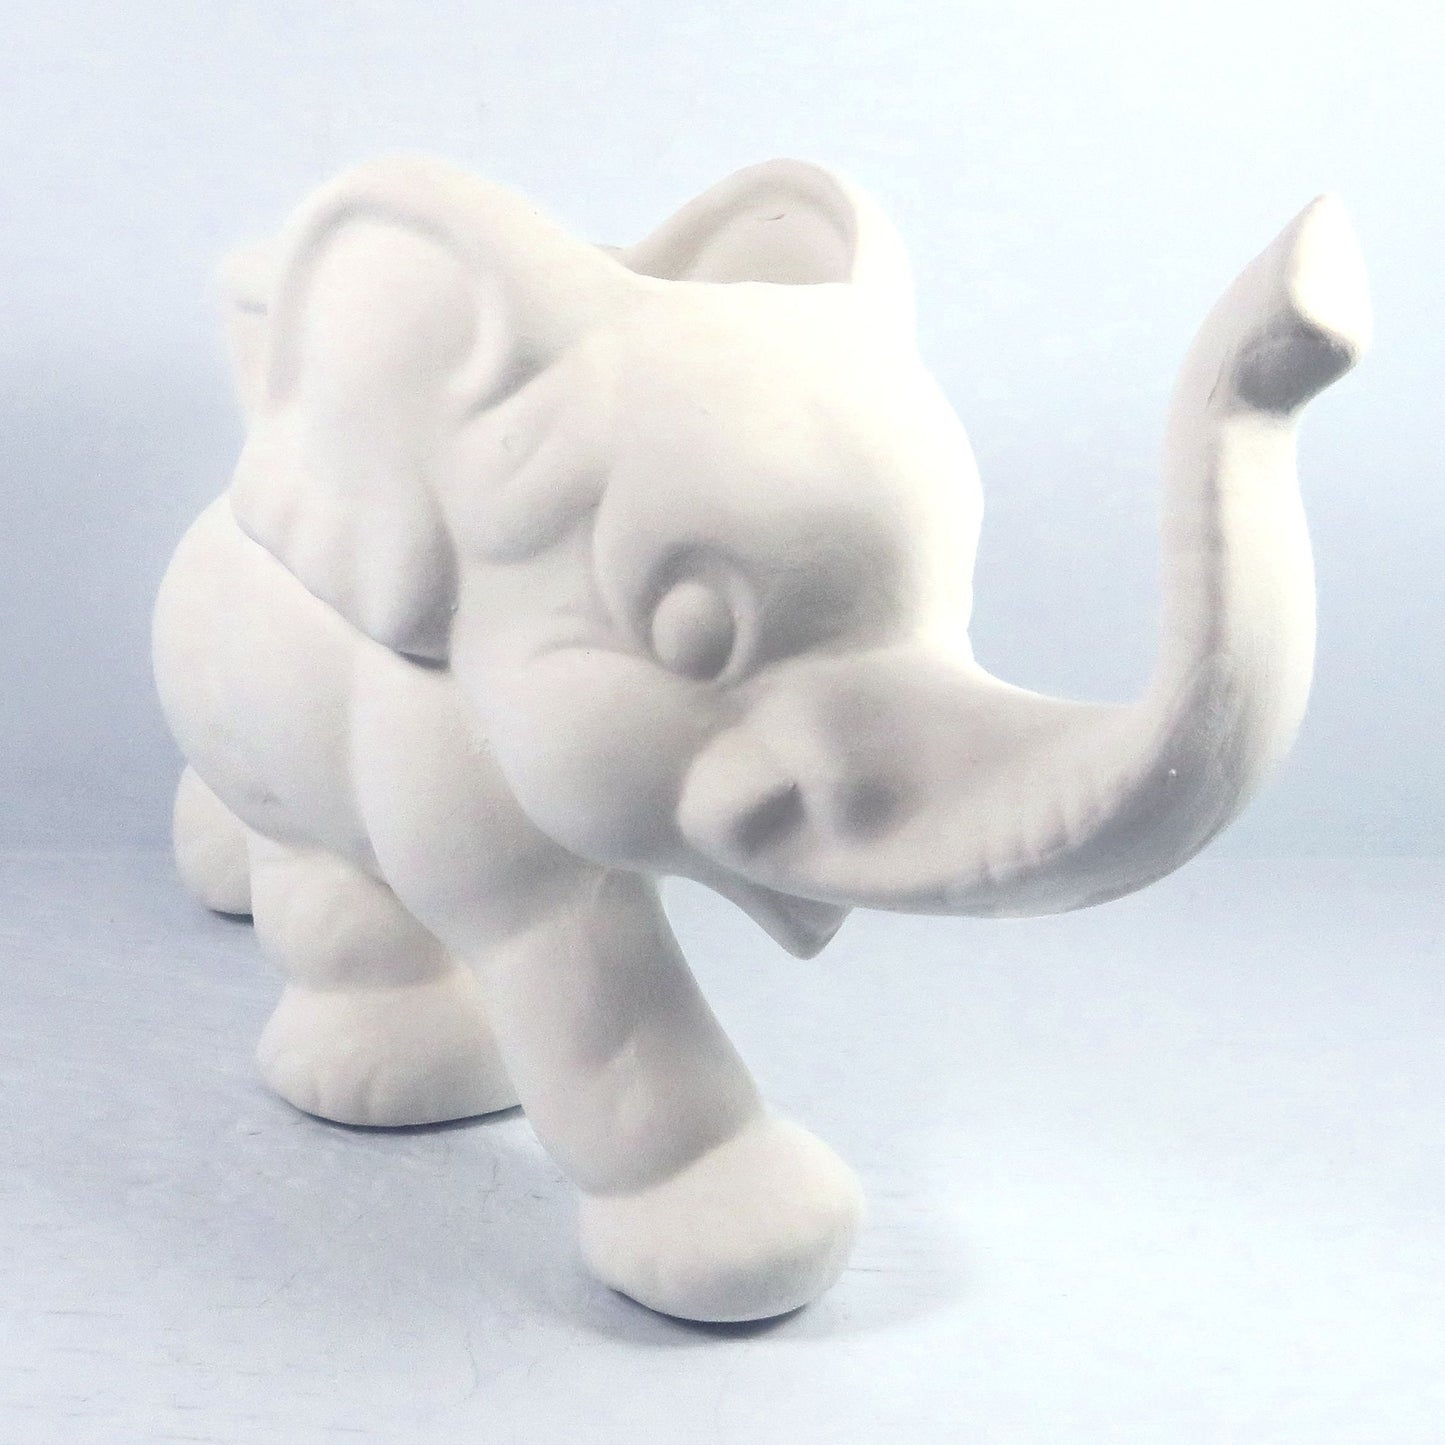 Ready to Paint Handmade Ceramic Bisque Elephant Pot Figurine / Elephant Decor / Elephant Gift / Paintable Ceramics / DIY Ceramics